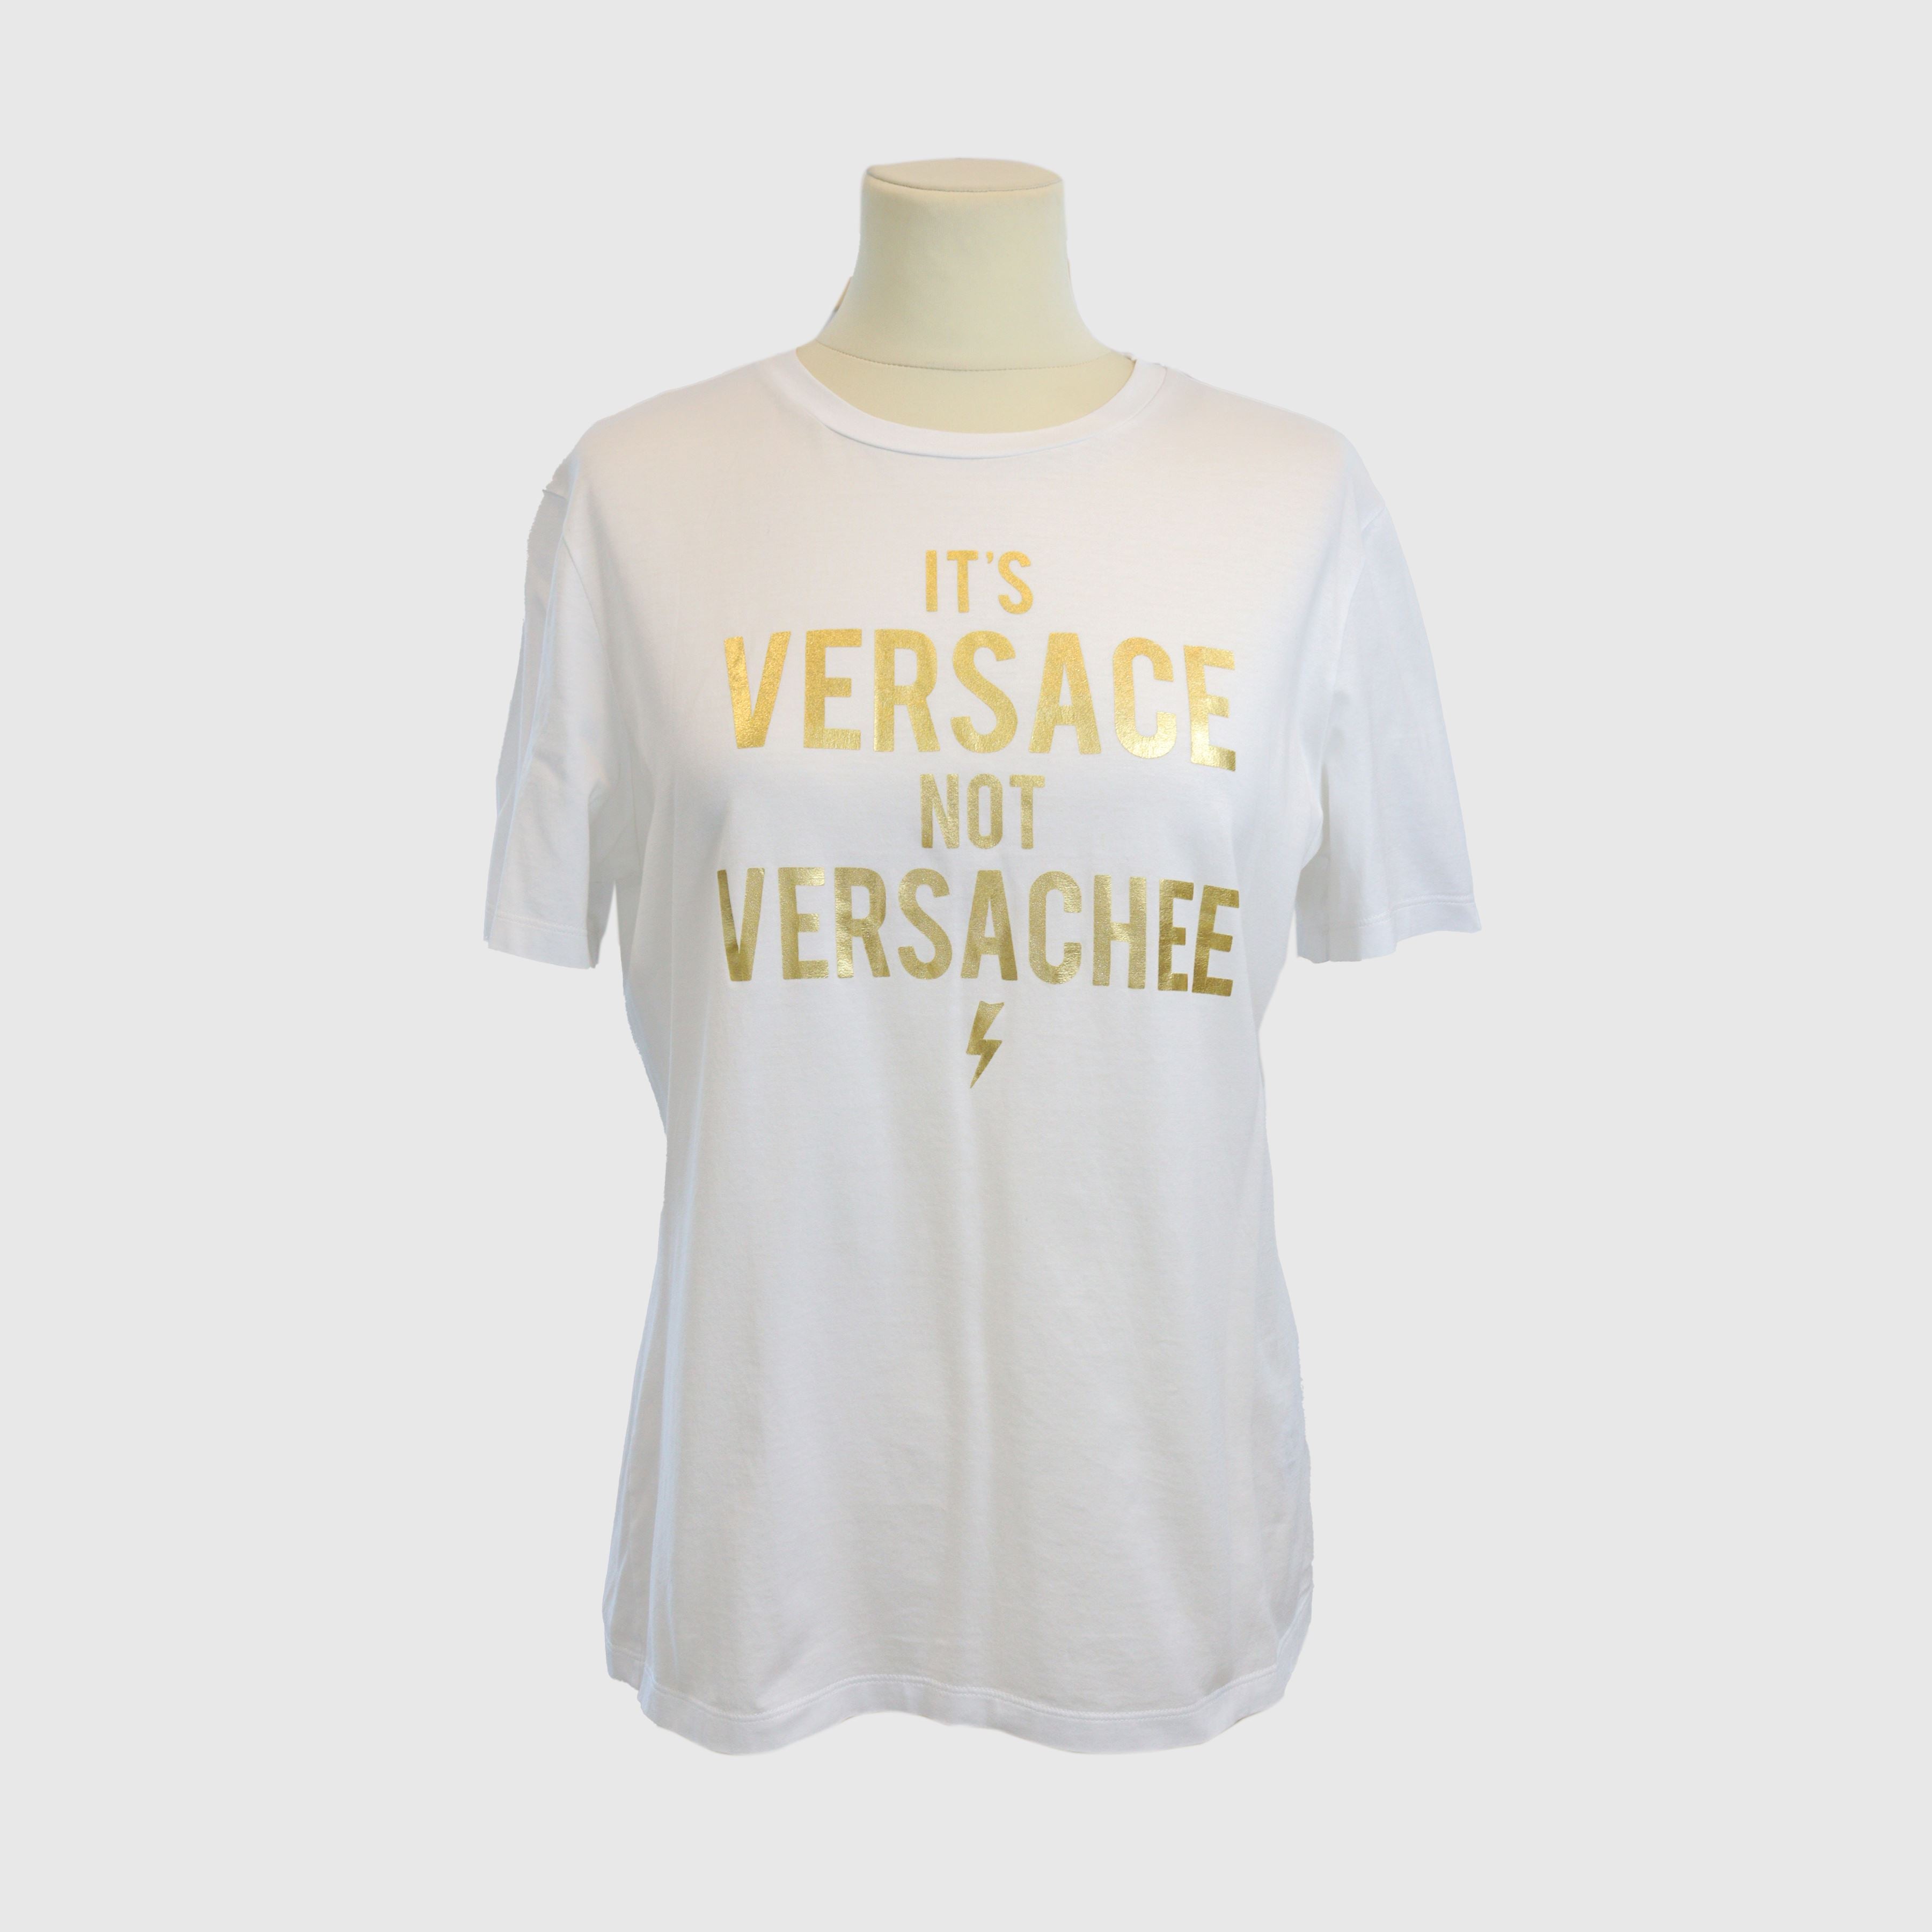 White/Gold "Its Versace not Versachee" Tshirt Clothing Versace 